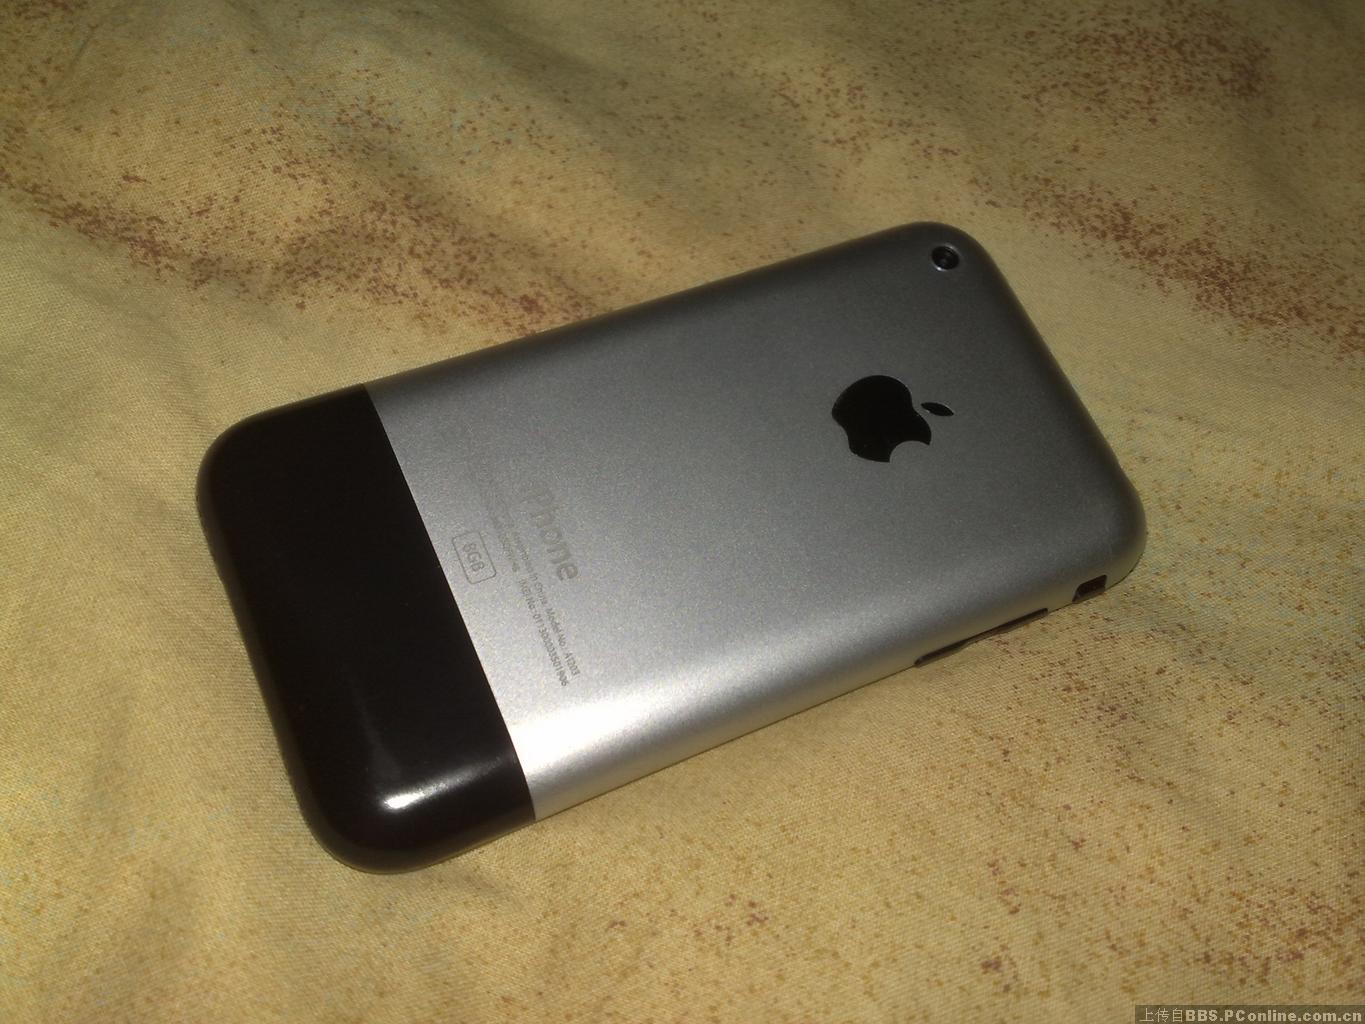 第一代苹果iphone出售或换手机